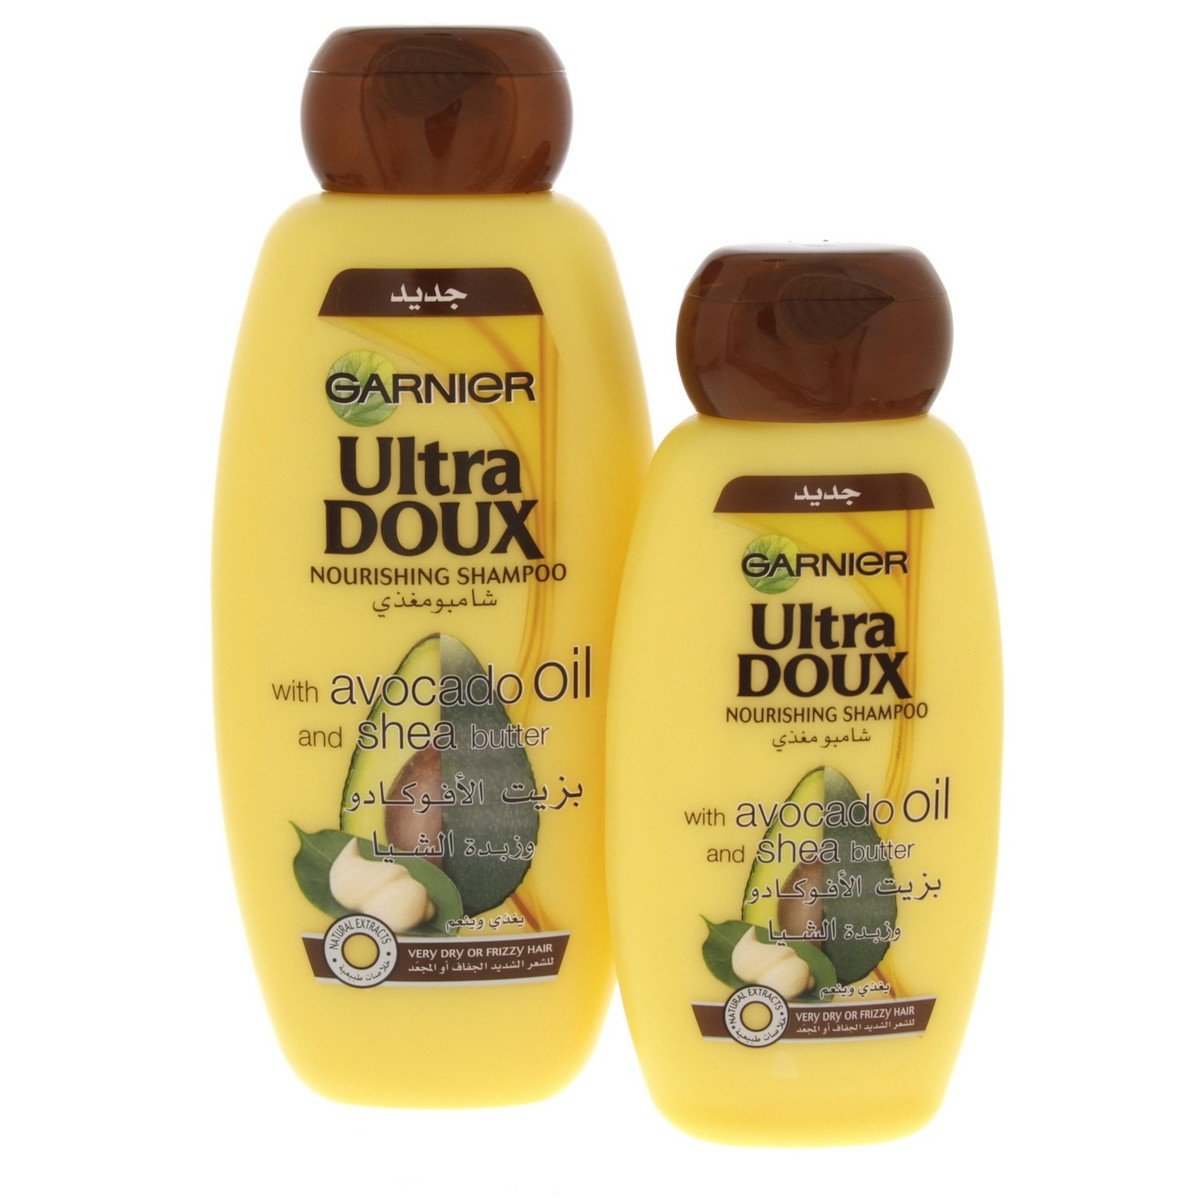 Garnier Ultra Doux Nourishing Shampoo With Avocado Oil And Shea Butter 400ml + 200ml